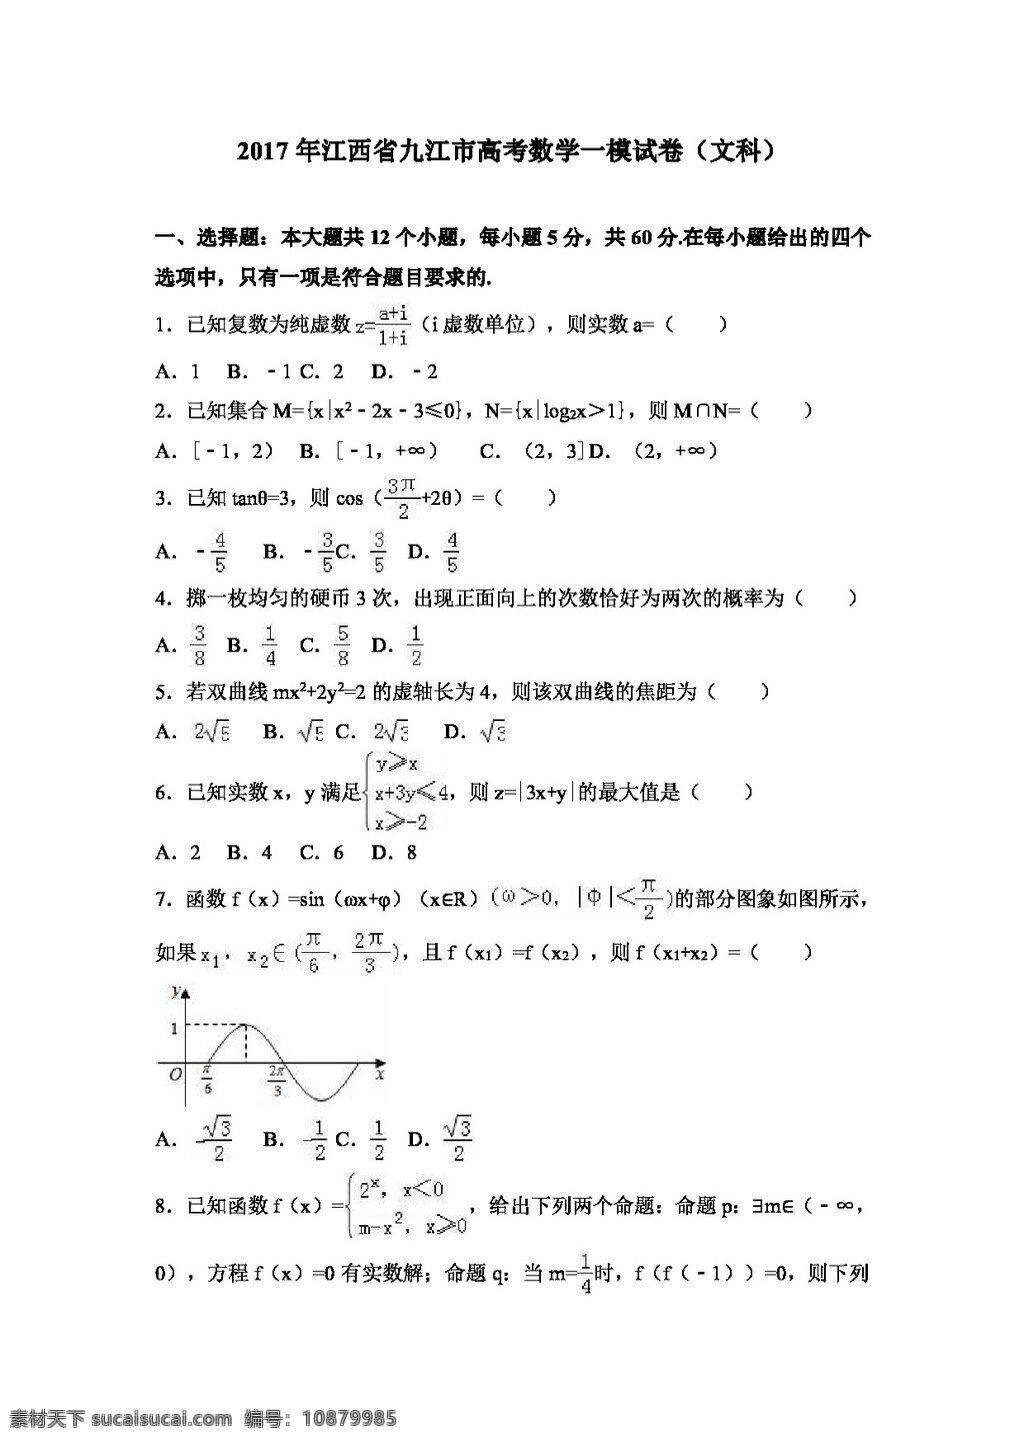 数学 人教 版 2017 年 江西省 九江市 高考 模 试卷 文科 高考专区 人教版